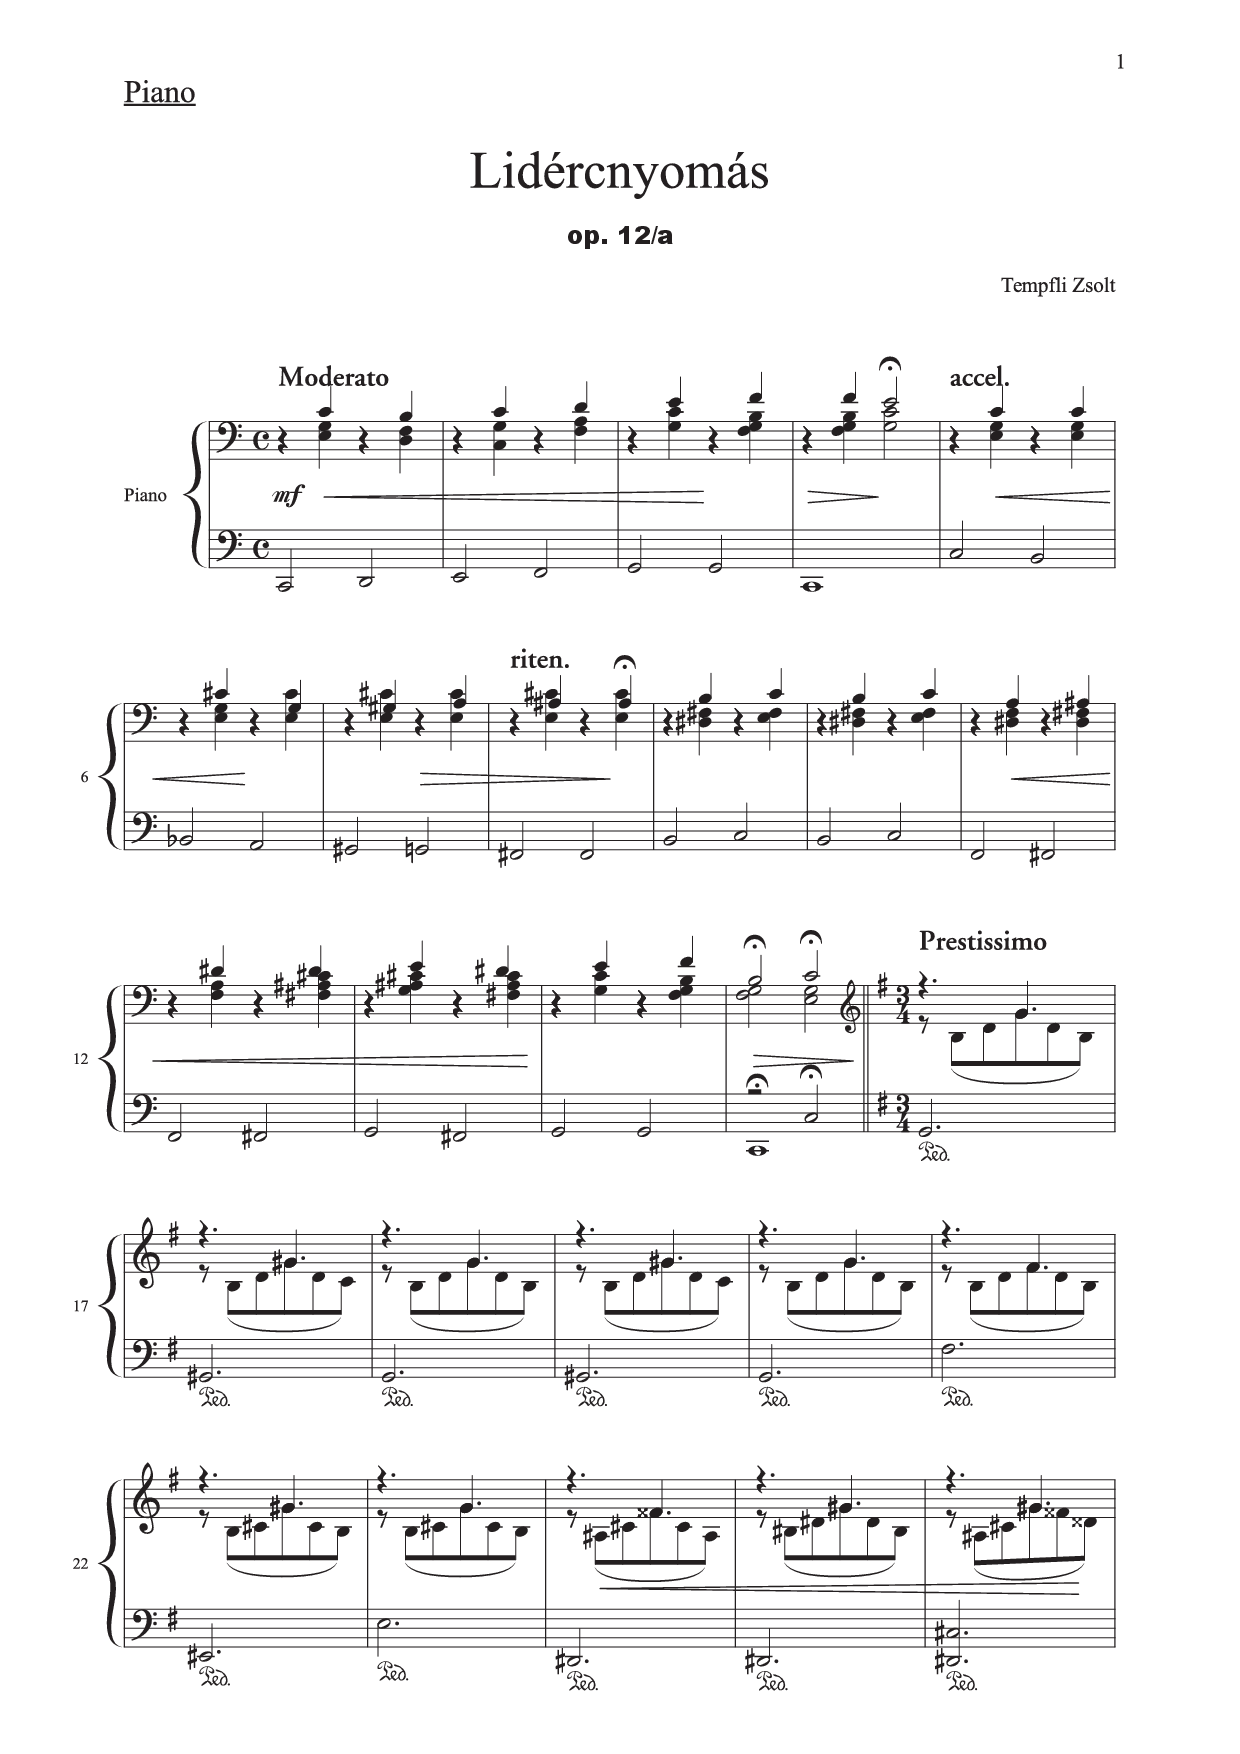 Tempfli Zsolt: A Lidércnyomás no. 1 zongorára, op. 12